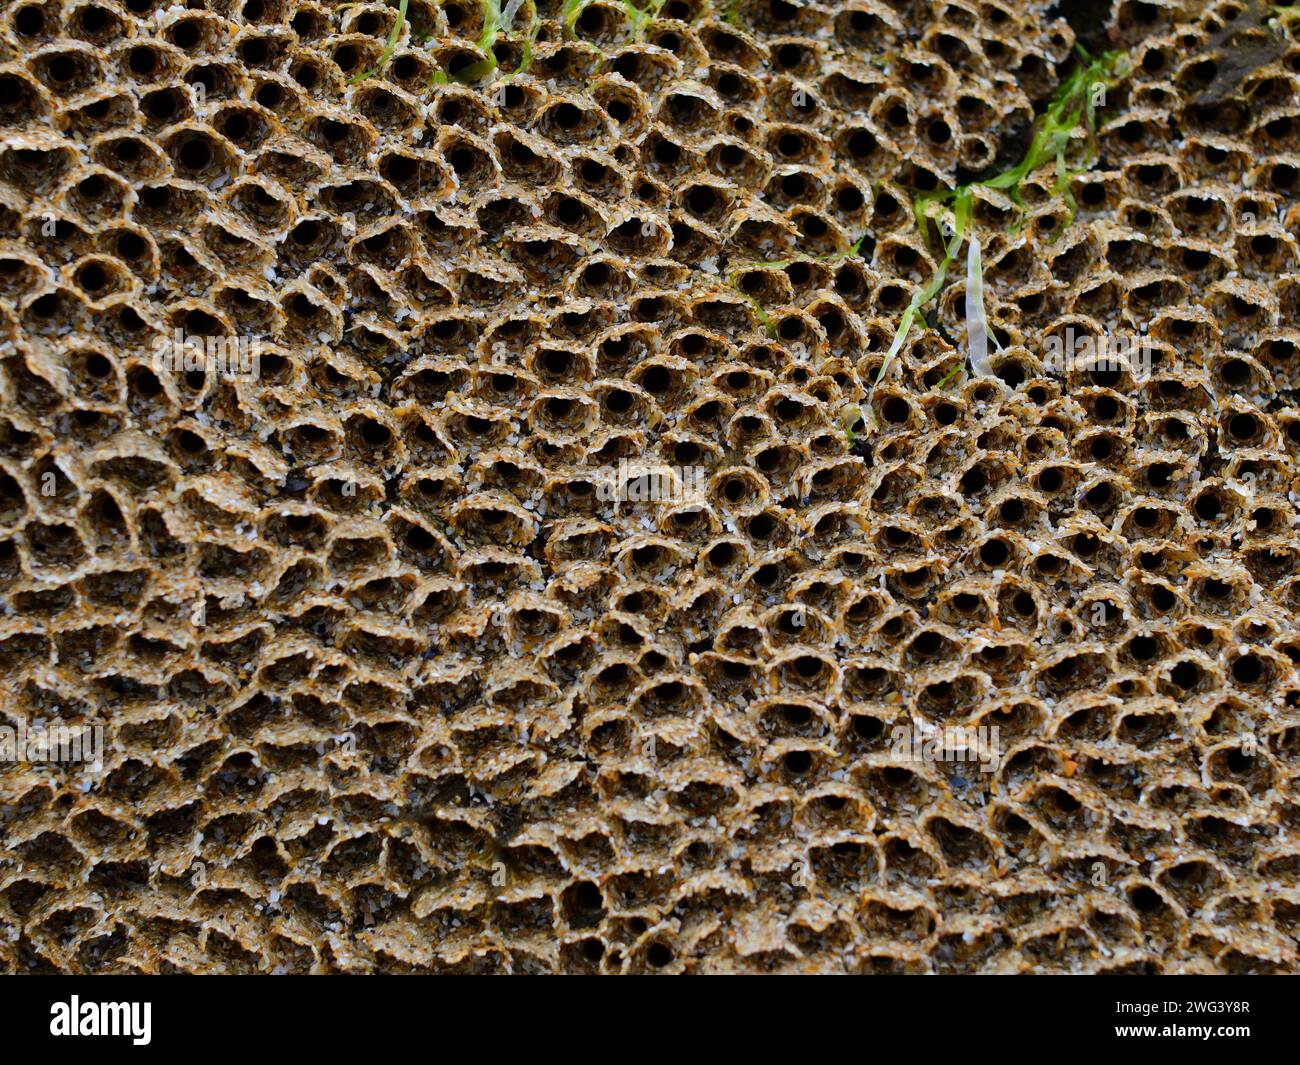 Honeycomb worm reef Stock Photo